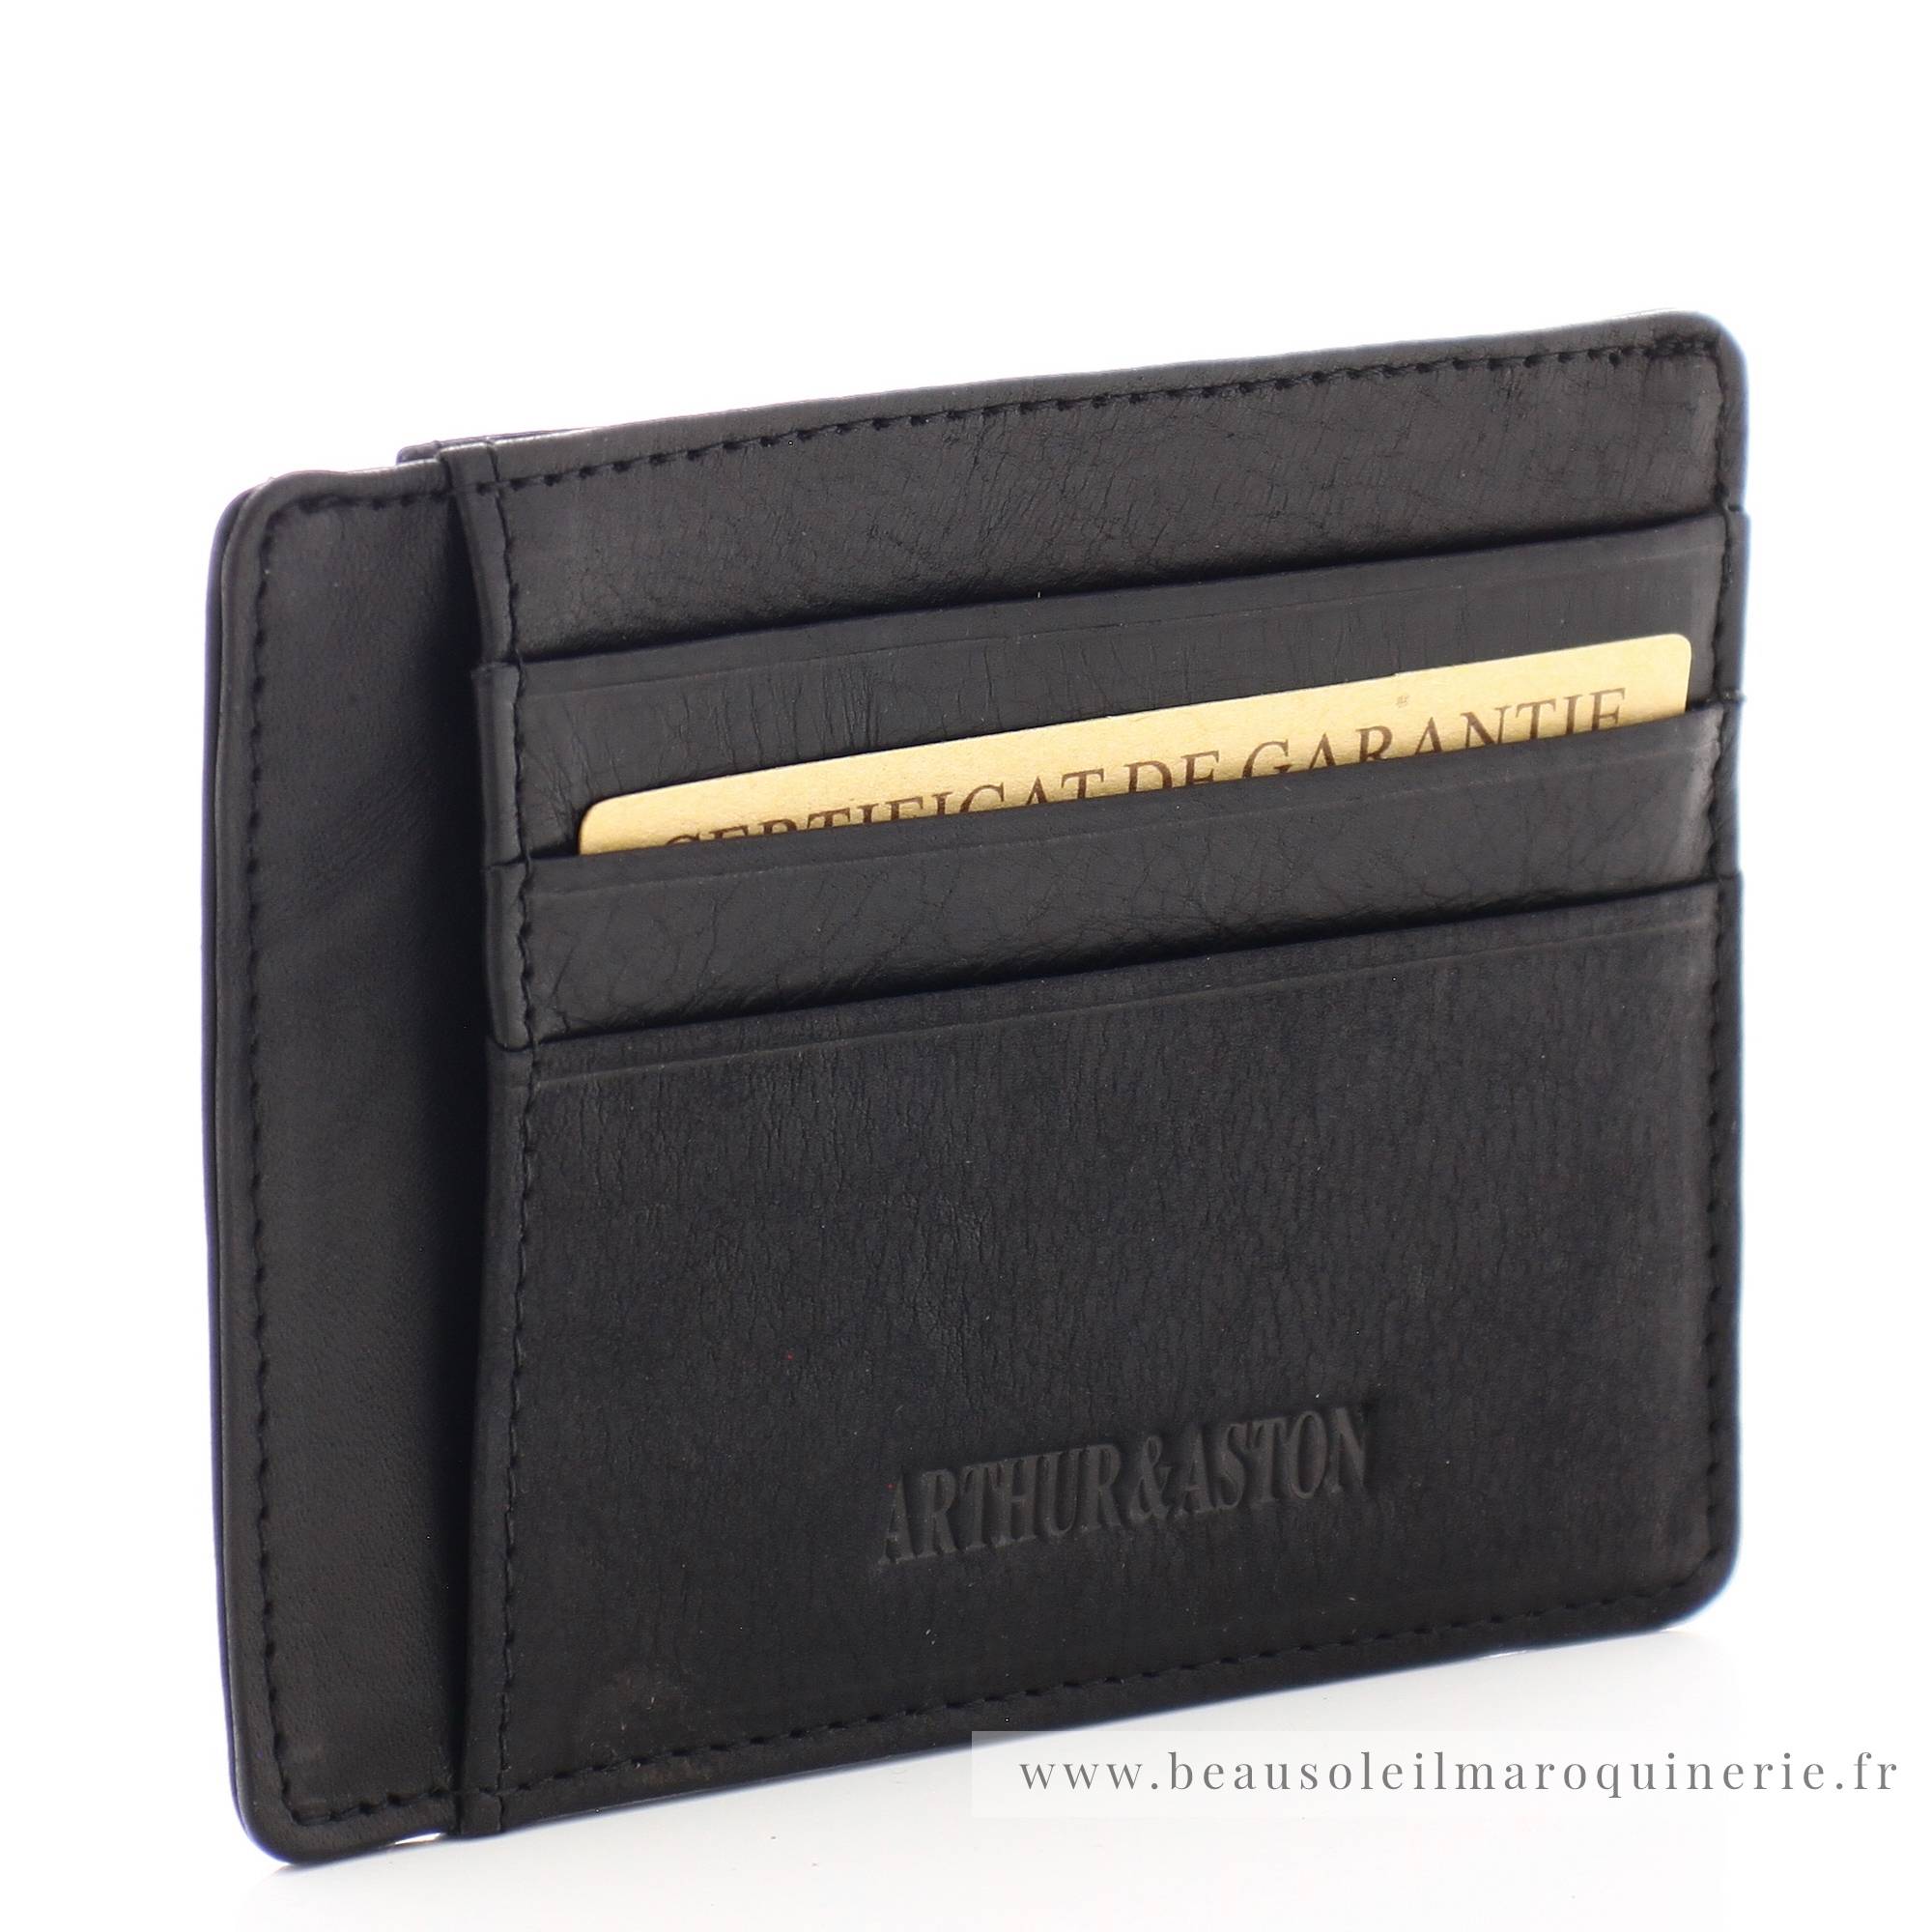 Porte cartes Arthur Aston Louis format mini cuir 94-147A couleur noir, vue de côté